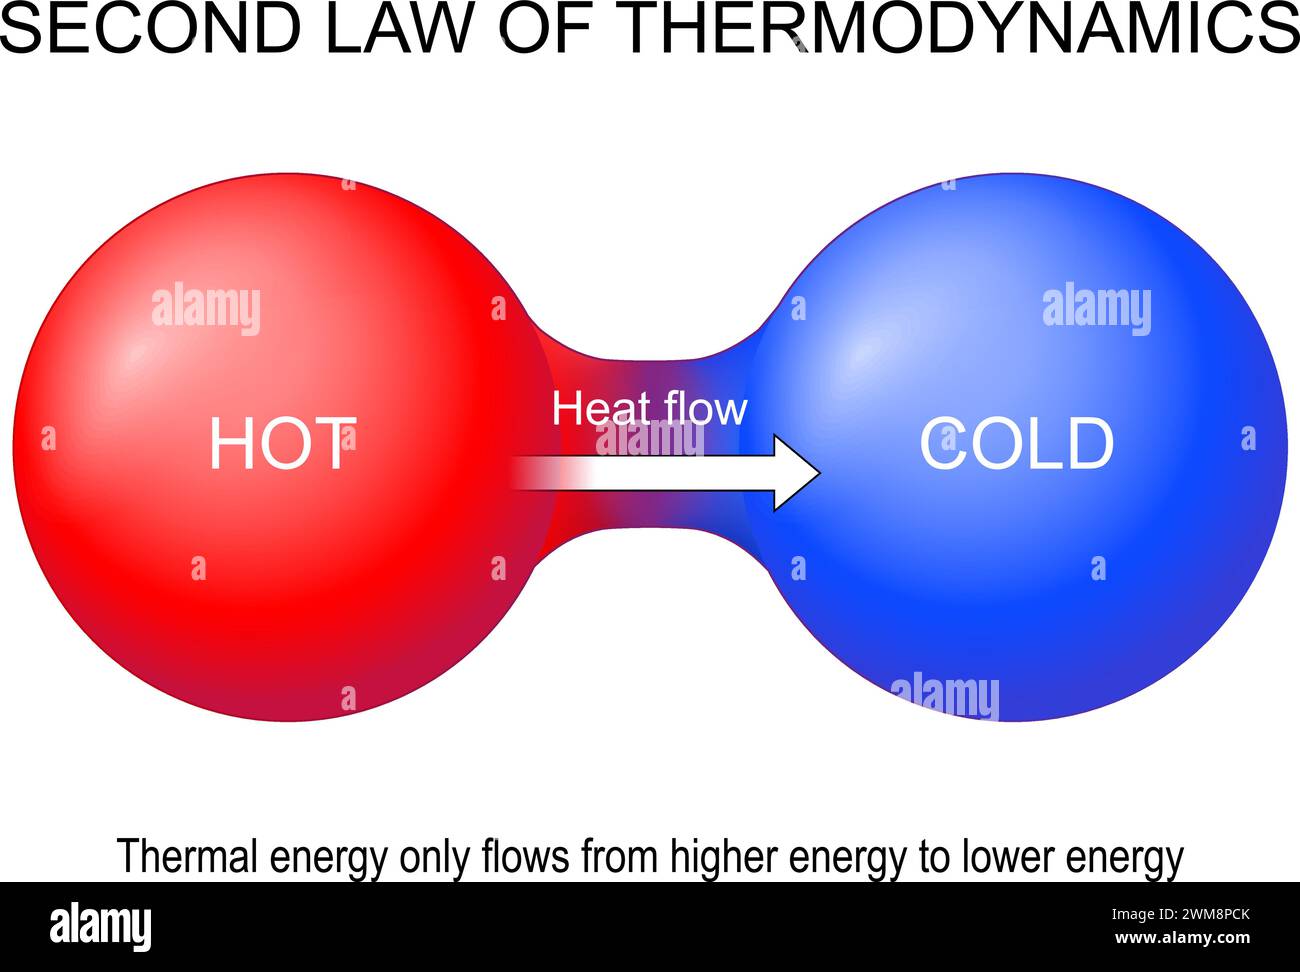 Seconda legge della termodinamica. L'energia termica passa solo da energia più elevata a energia più bassa. Trasferimento termico. Generazione di entropia. Equilibrio termico. Ve Illustrazione Vettoriale